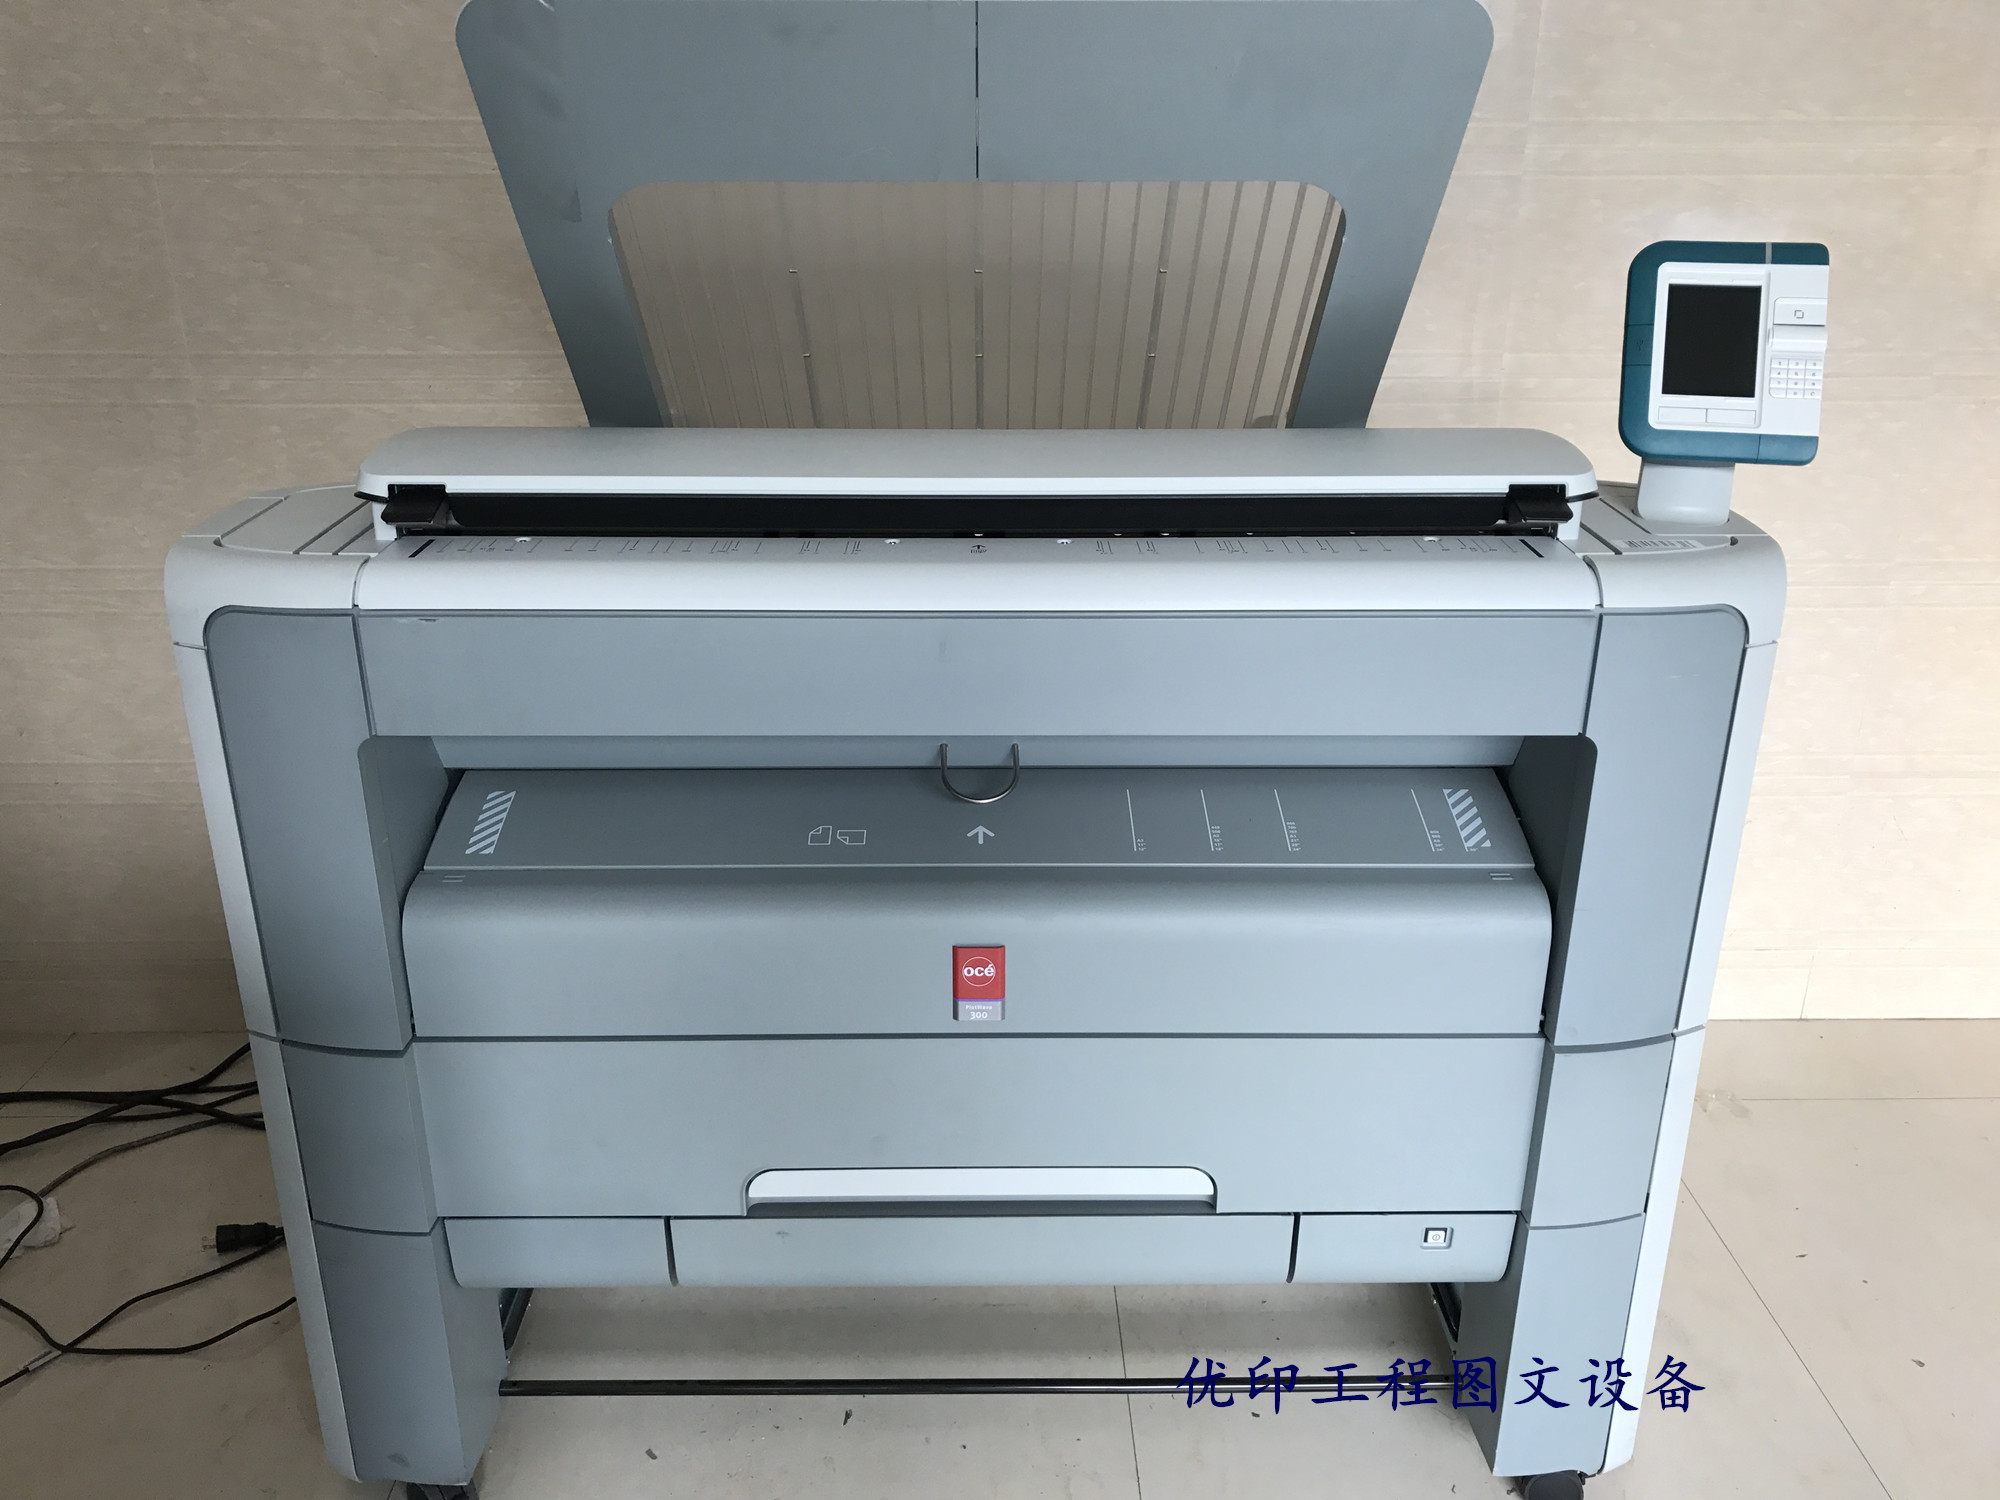 A0 quét màu tích hợp kế hoạch chi tiết laser mới Máy in PDF Océ pw300 / 350 máy photocopy kỹ thuật - Máy photocopy đa chức năng